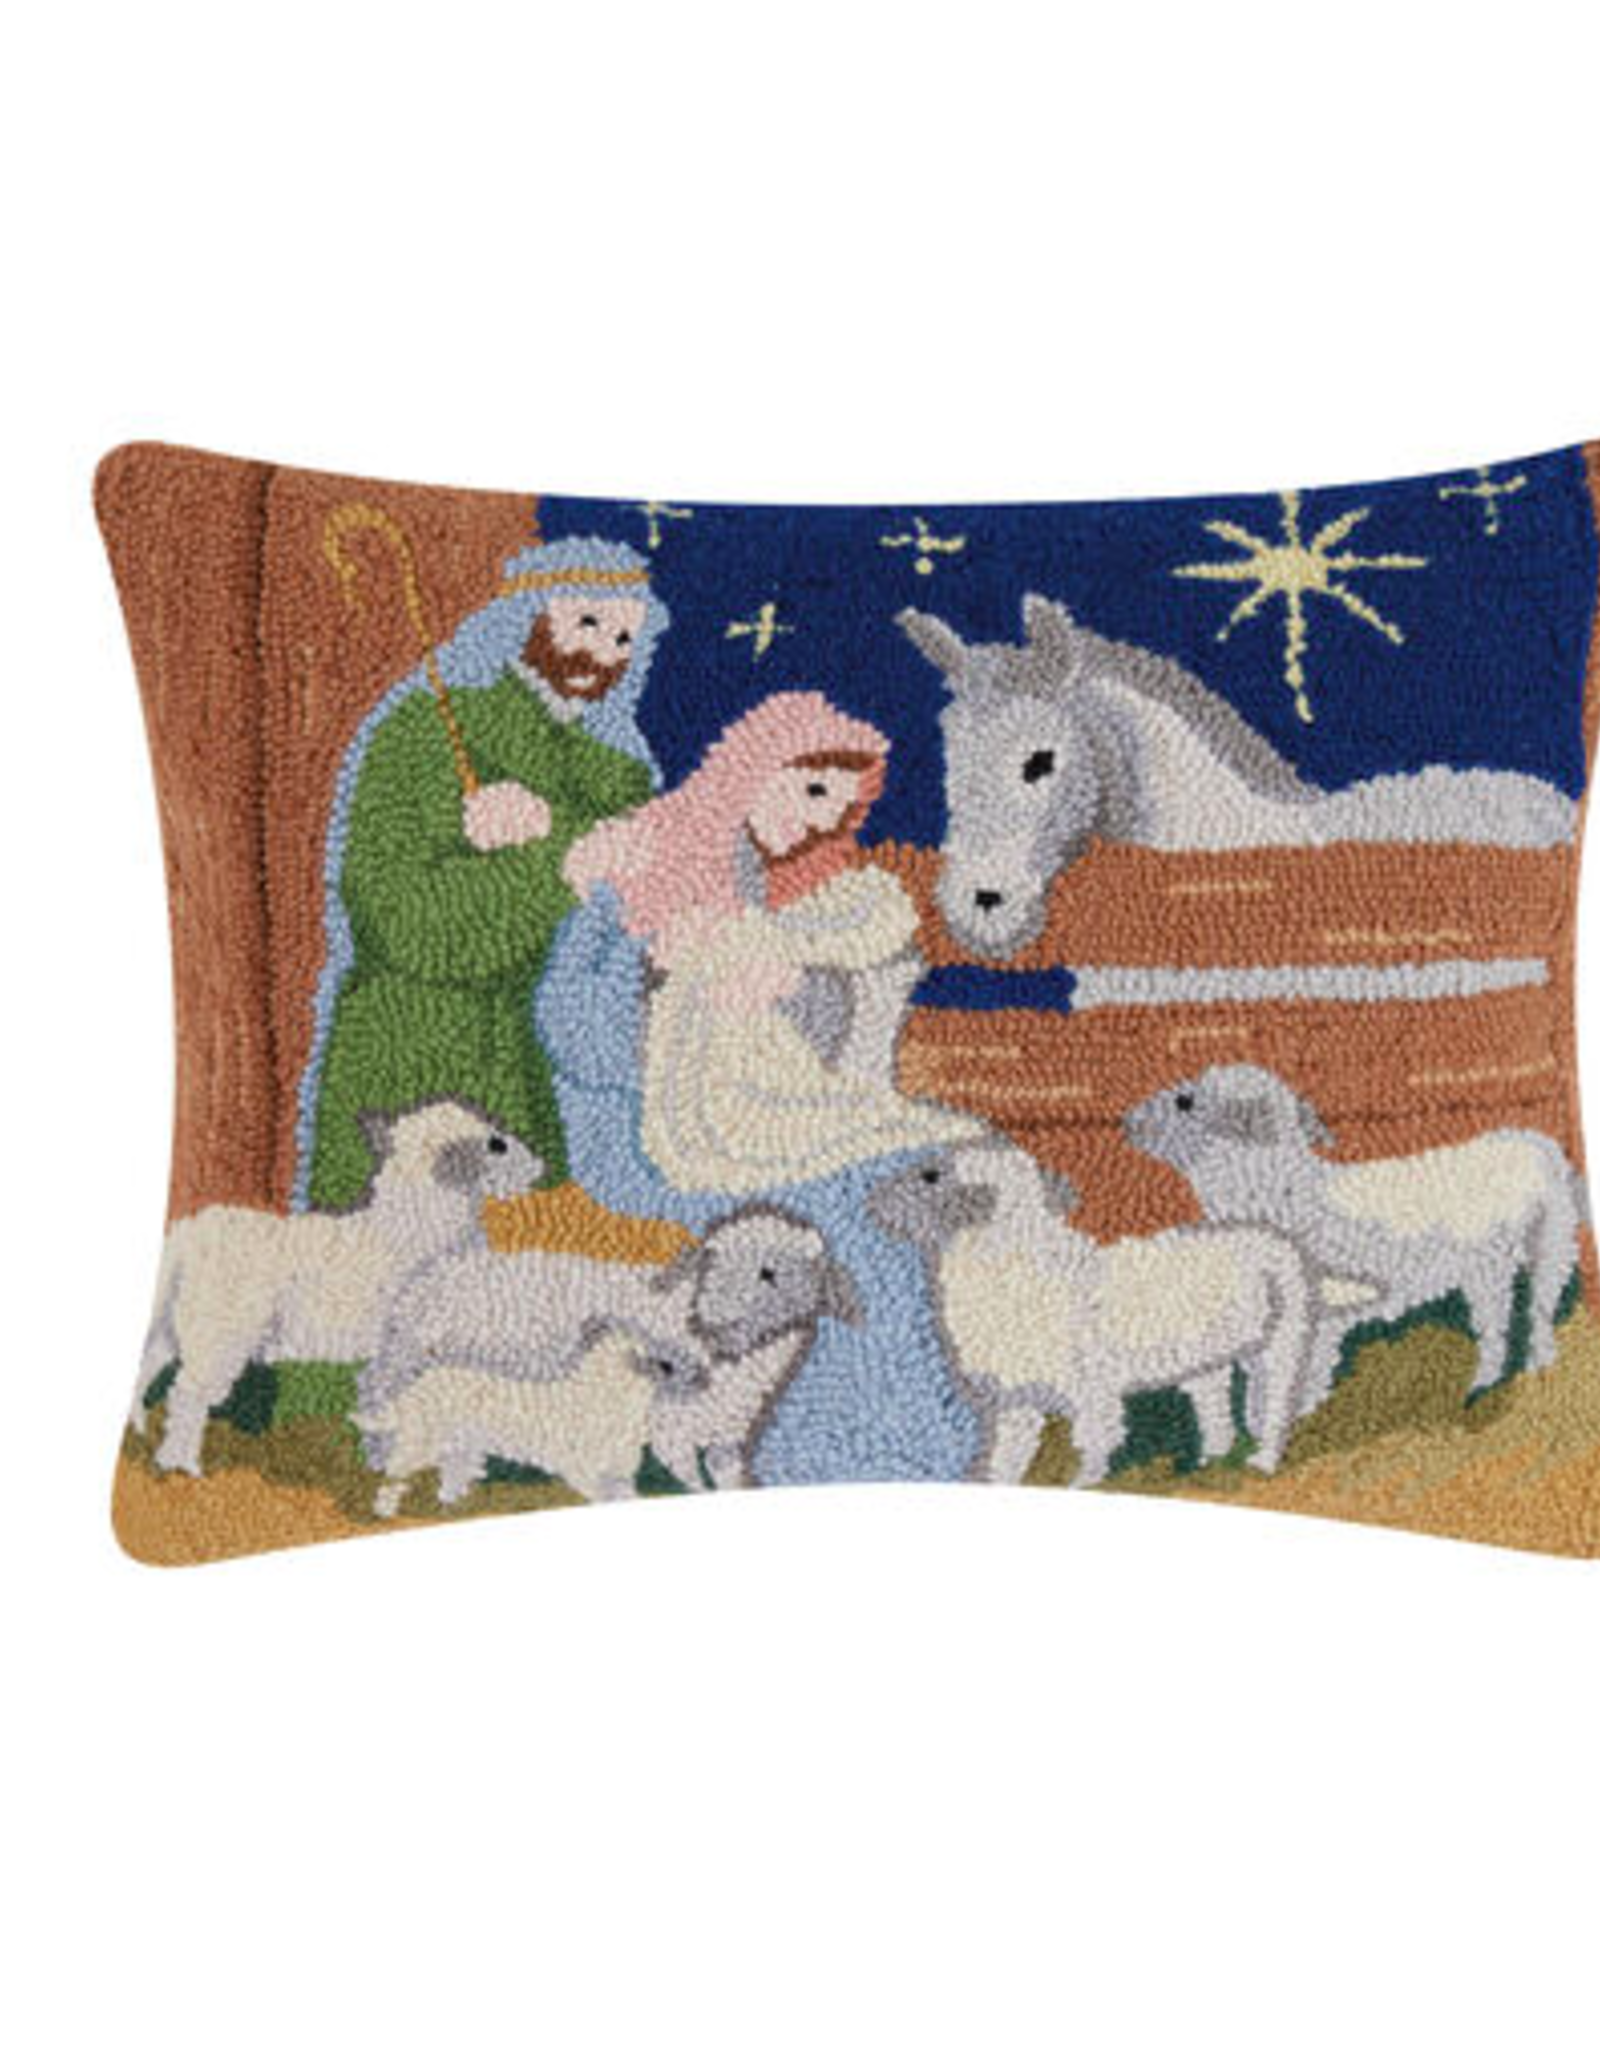 Nativity Hook Pillow 16X20"